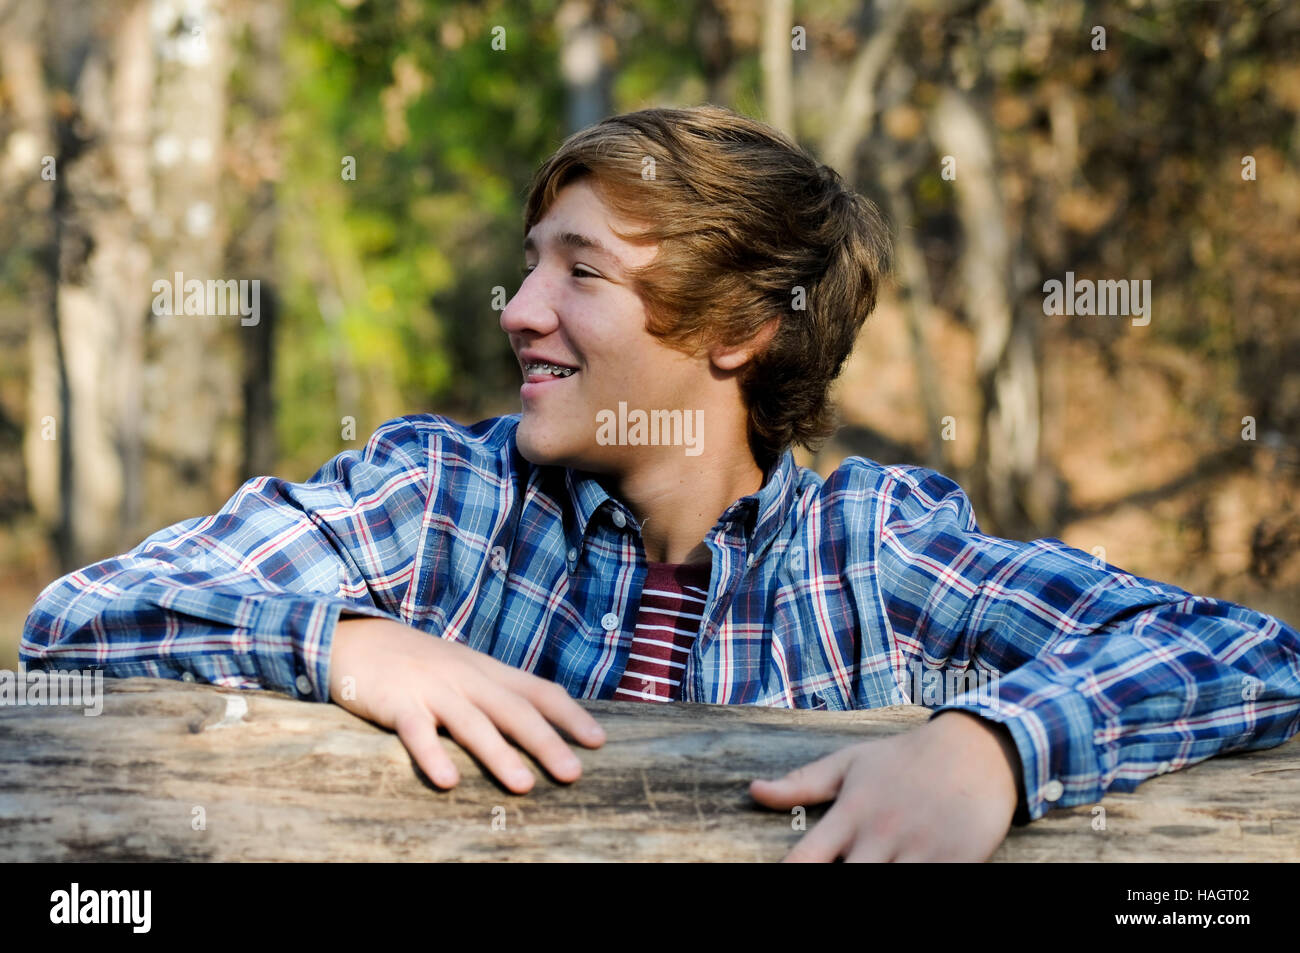 Outdoor ritratto di ragazzo adolescente di essere stupido. Foto Stock